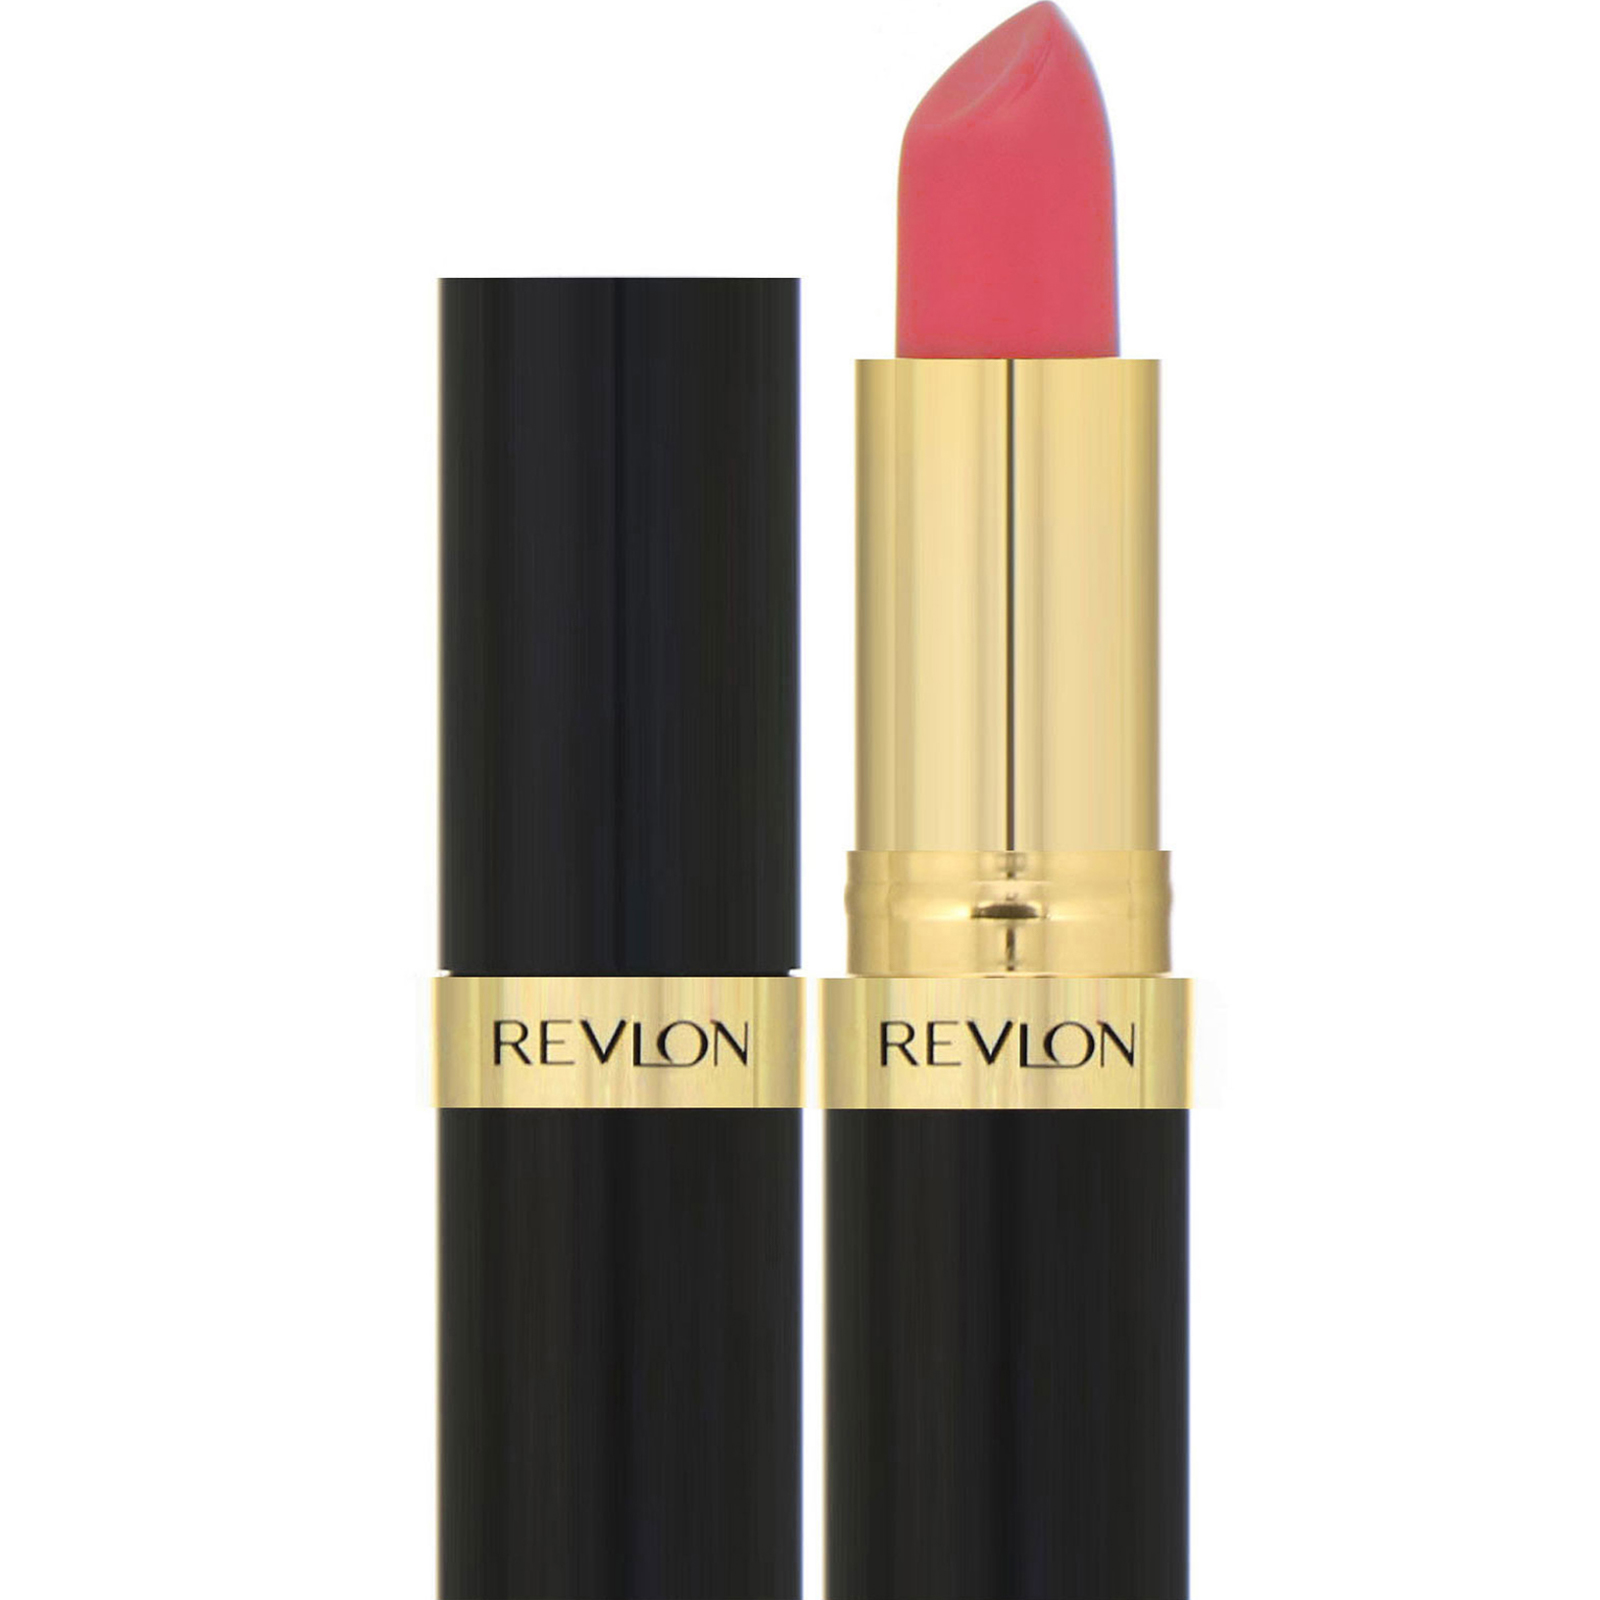 Revlon Super Lustrous Lipstick – Timeless Elegance in Every Shade